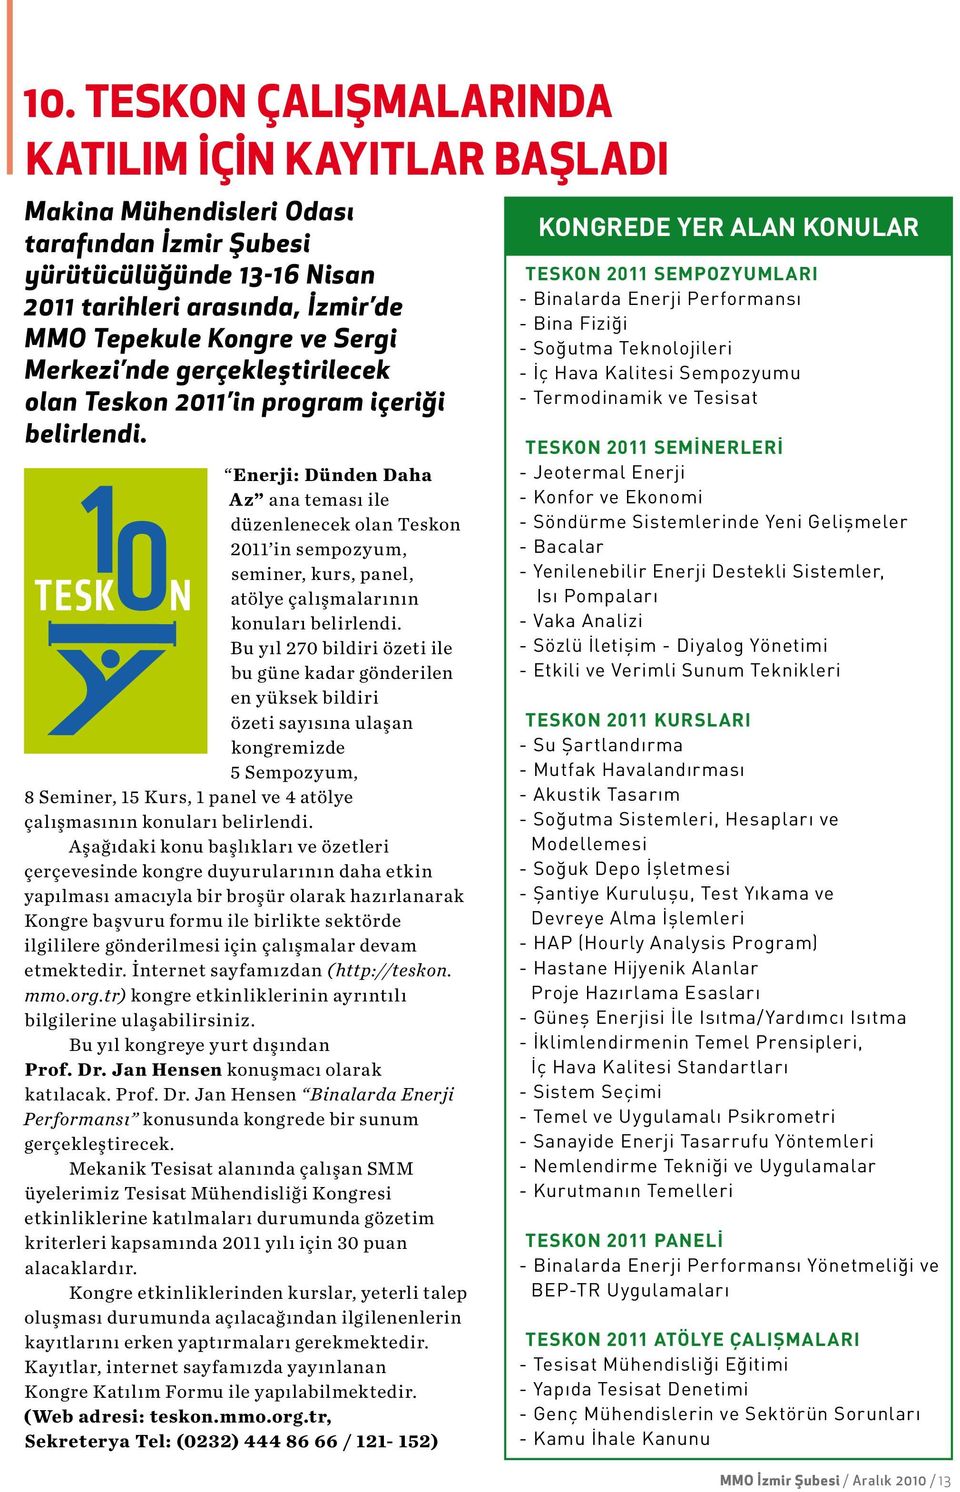 Enerji: Dünden Daha Az ana teması ile düzenlenecek olan Teskon 2011 in sempozyum, seminer, kurs, panel, atölye çalışmalarının konuları belirlendi.